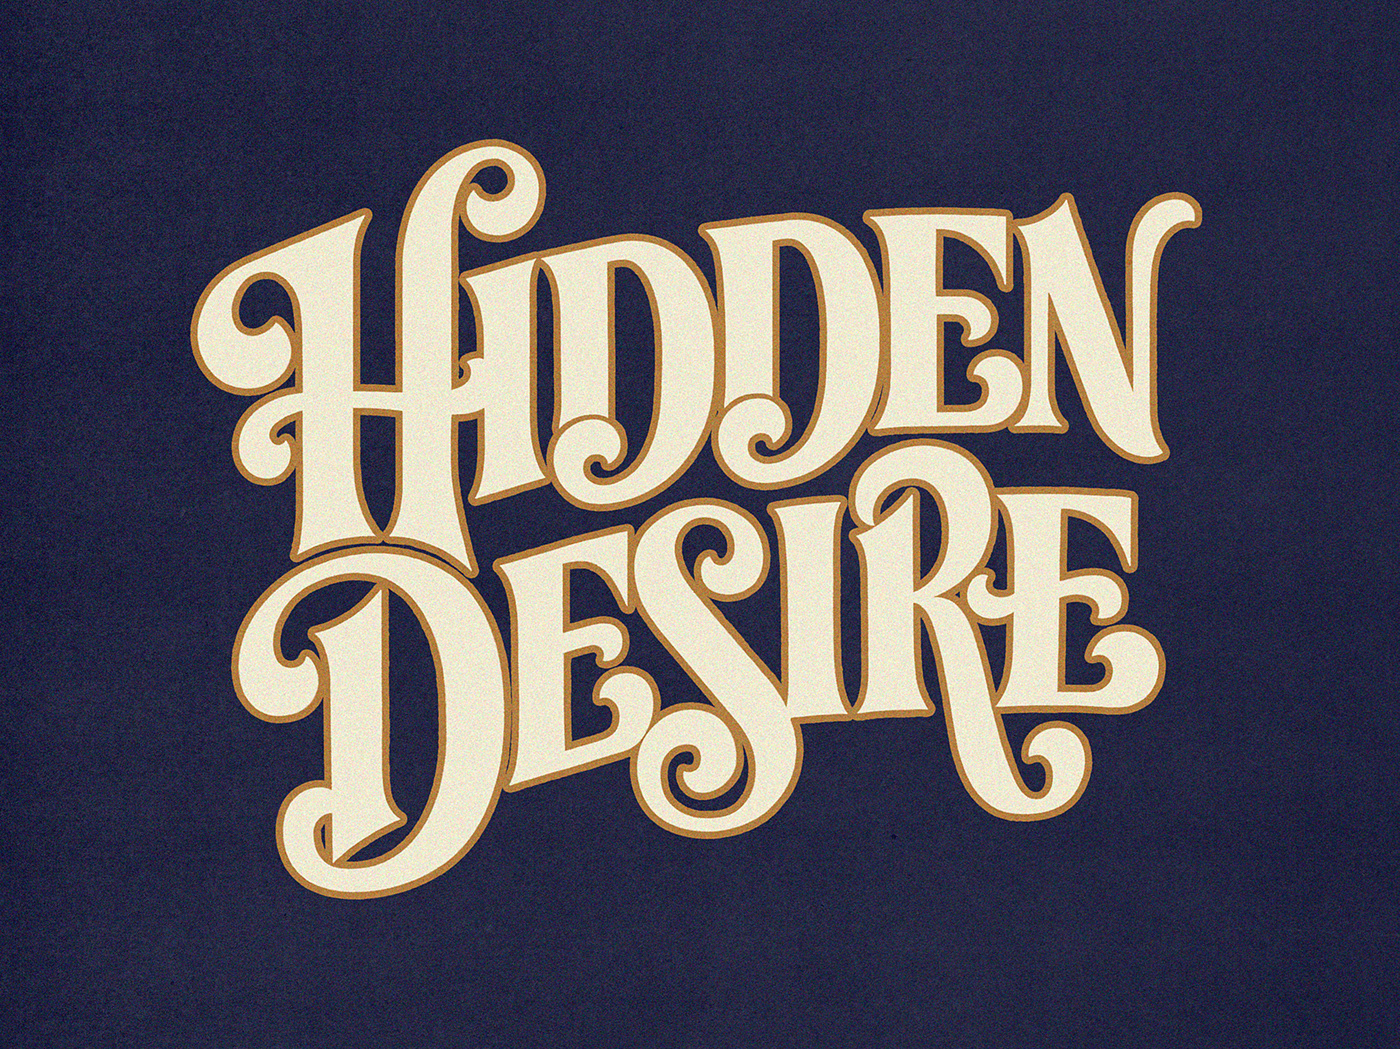 hidden desire